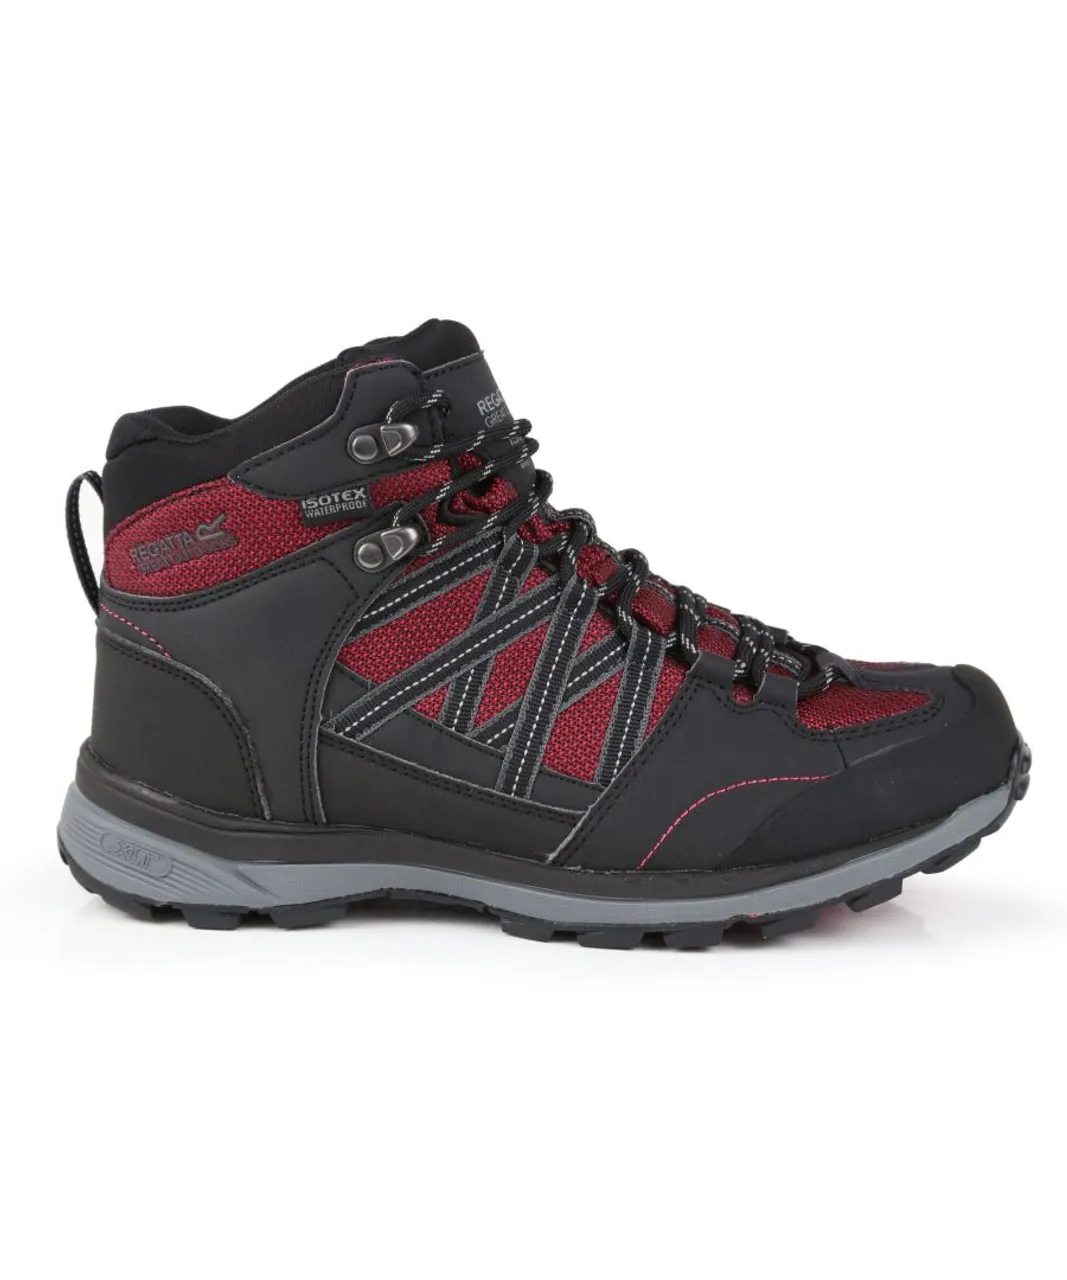 Regatta Womens/Ladies Samaris Mid II Hiking Boots (Beetroot Ash) - Red